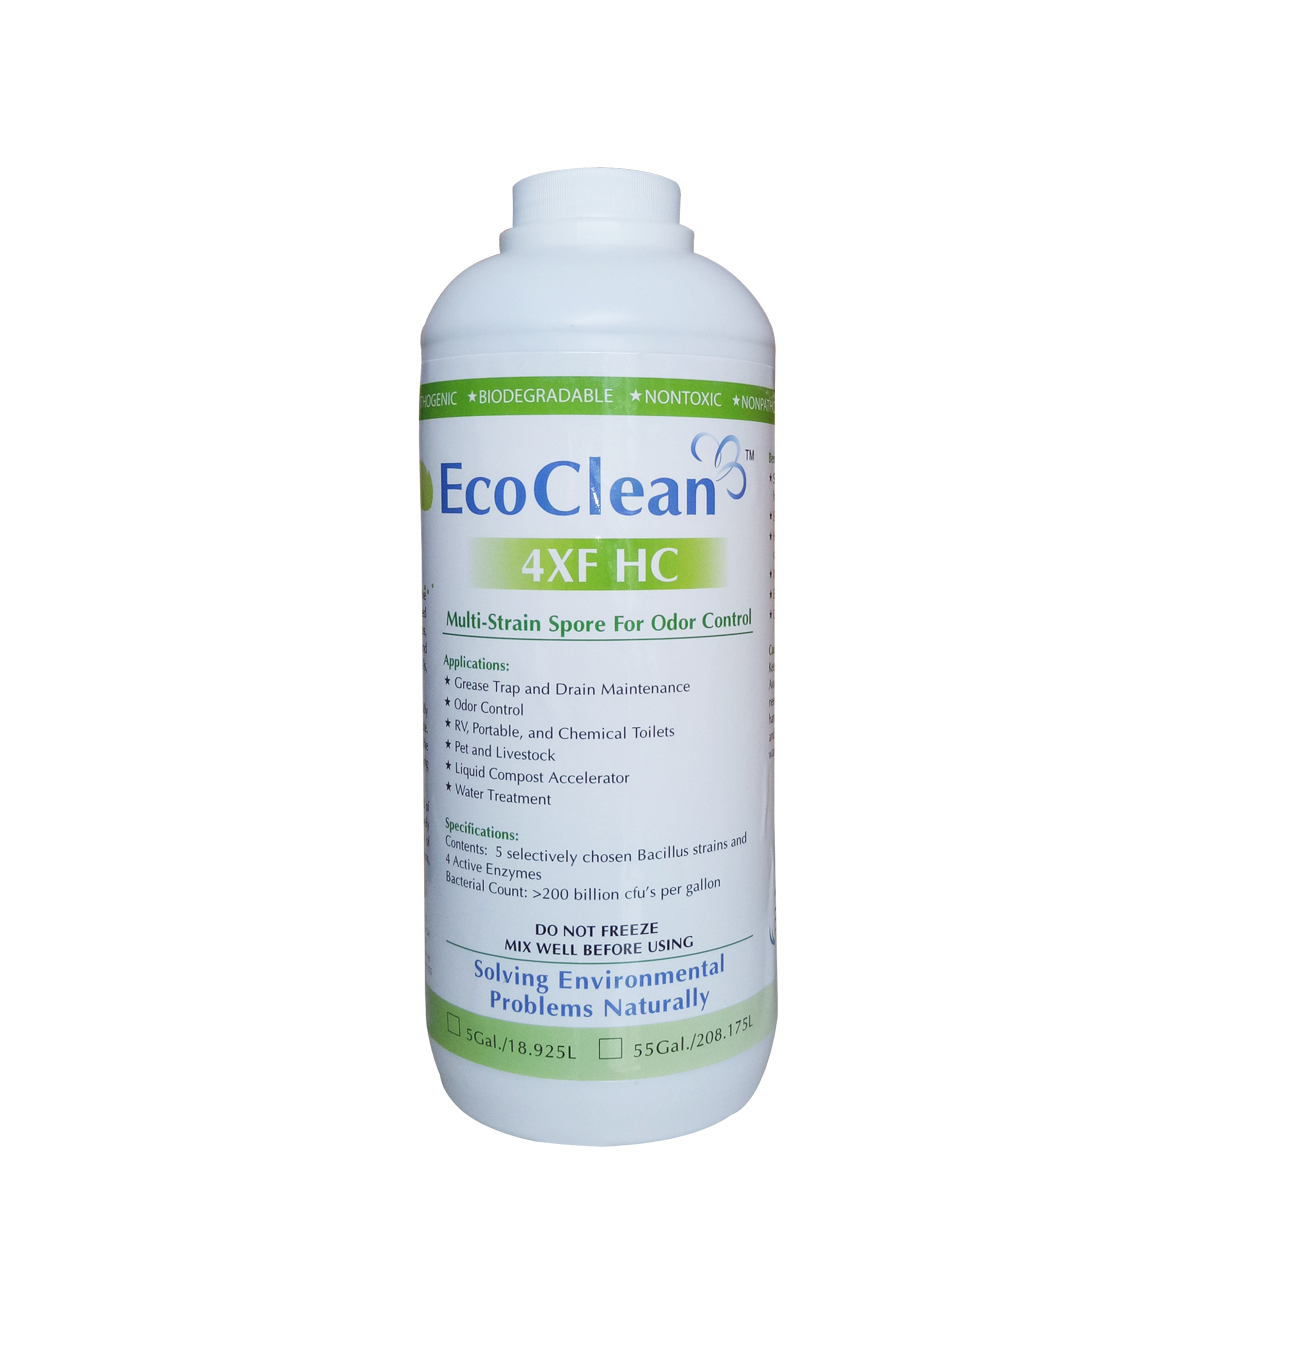 EcoClean 4XFHC - Vi Sinh Xử Lý Mùi Hôi Chuồng Trại, Bãi Rác, Nước Thải, Hầm Tự Hoại  - Chai 1 lít